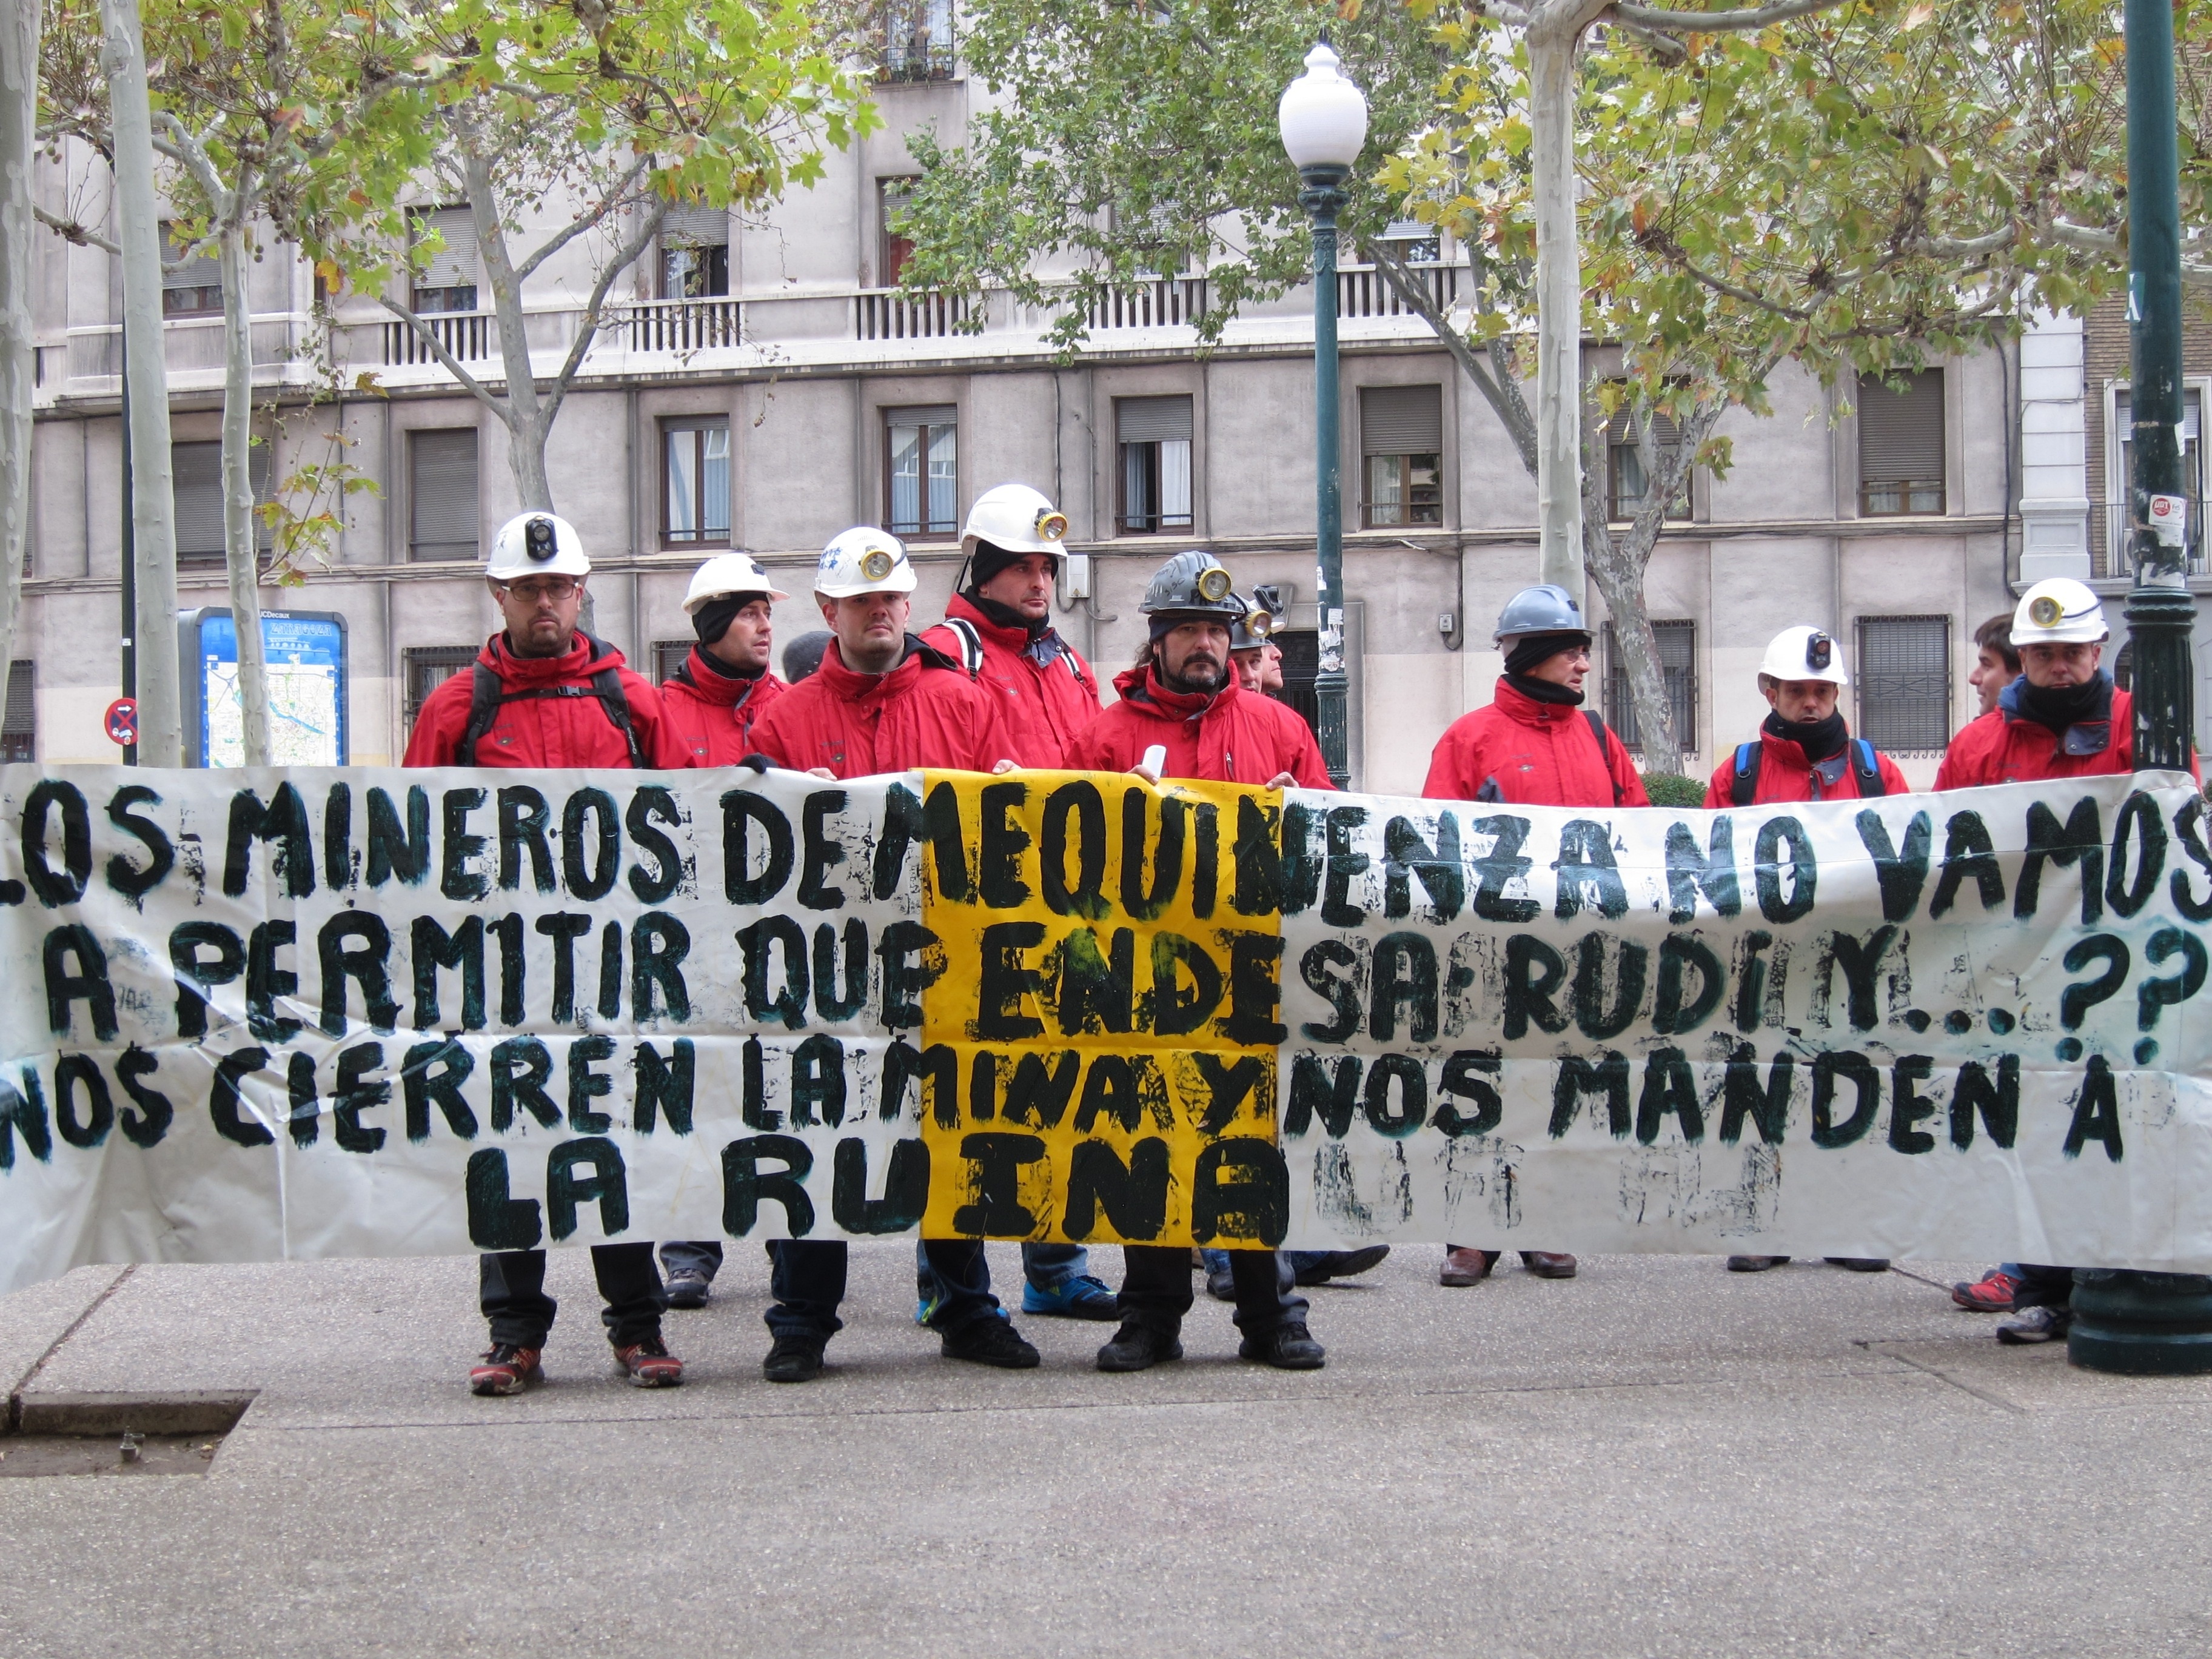 Los mineros de Mequinenza (Zaragoza) continúan su encierro en la Basílica del Pilar